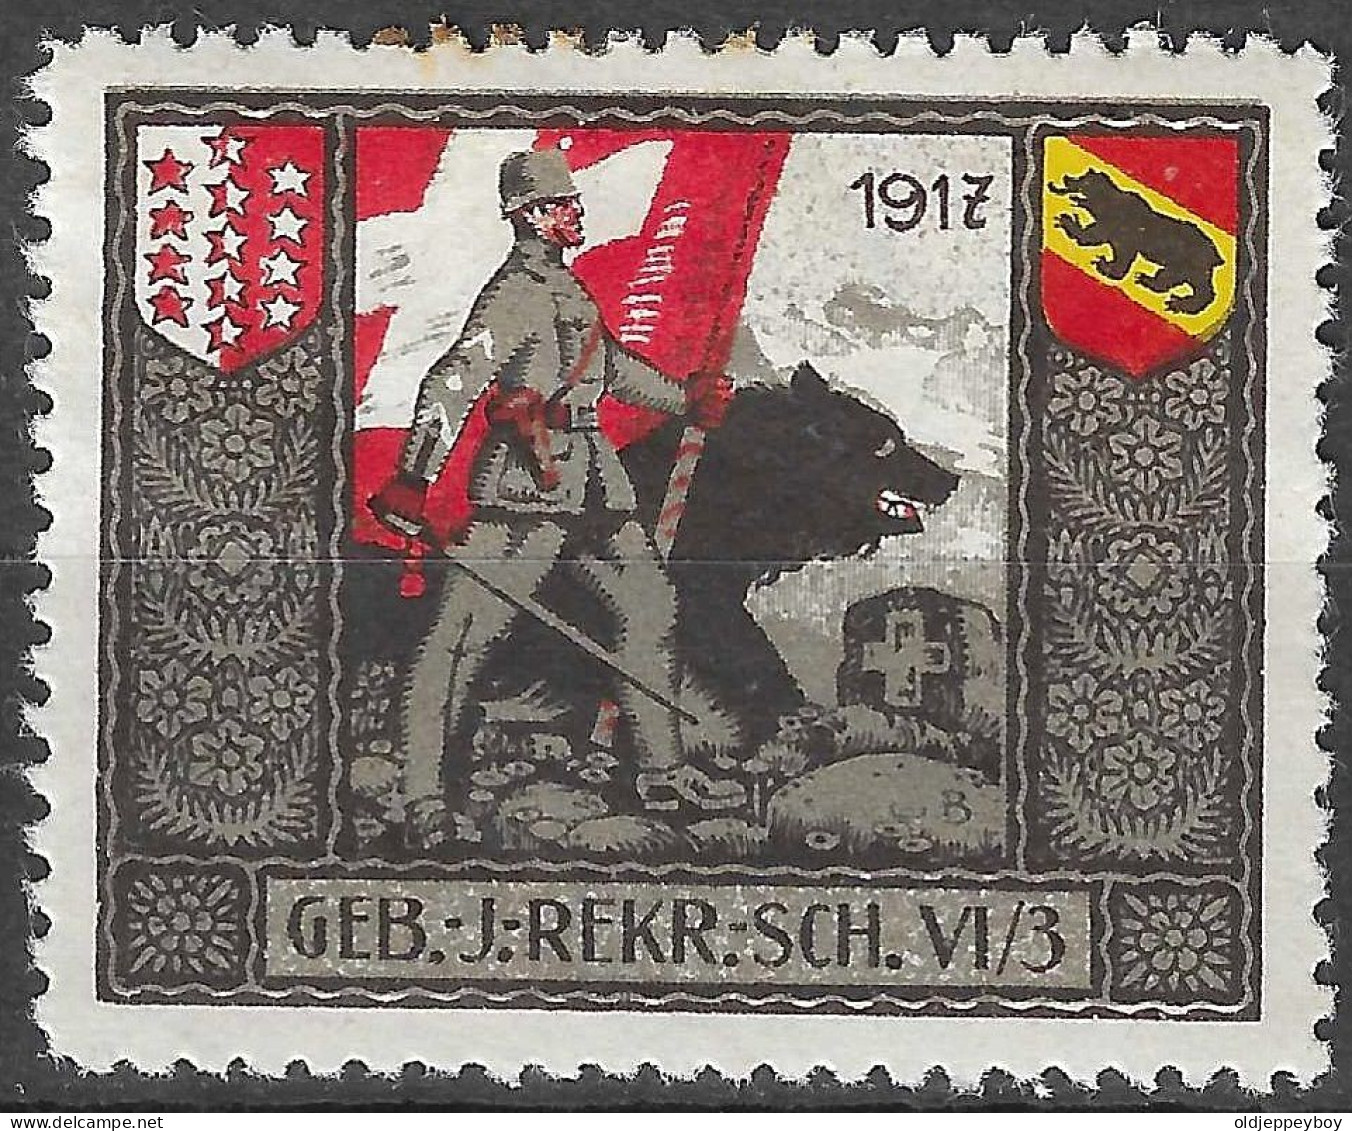 1914-1918 SWITZERLAND Soldatenmarken Suisse Militaire Vignette 1917 GEB.J.REKR.SCH.VI/3 MLH FULL GUM VF - Etichette